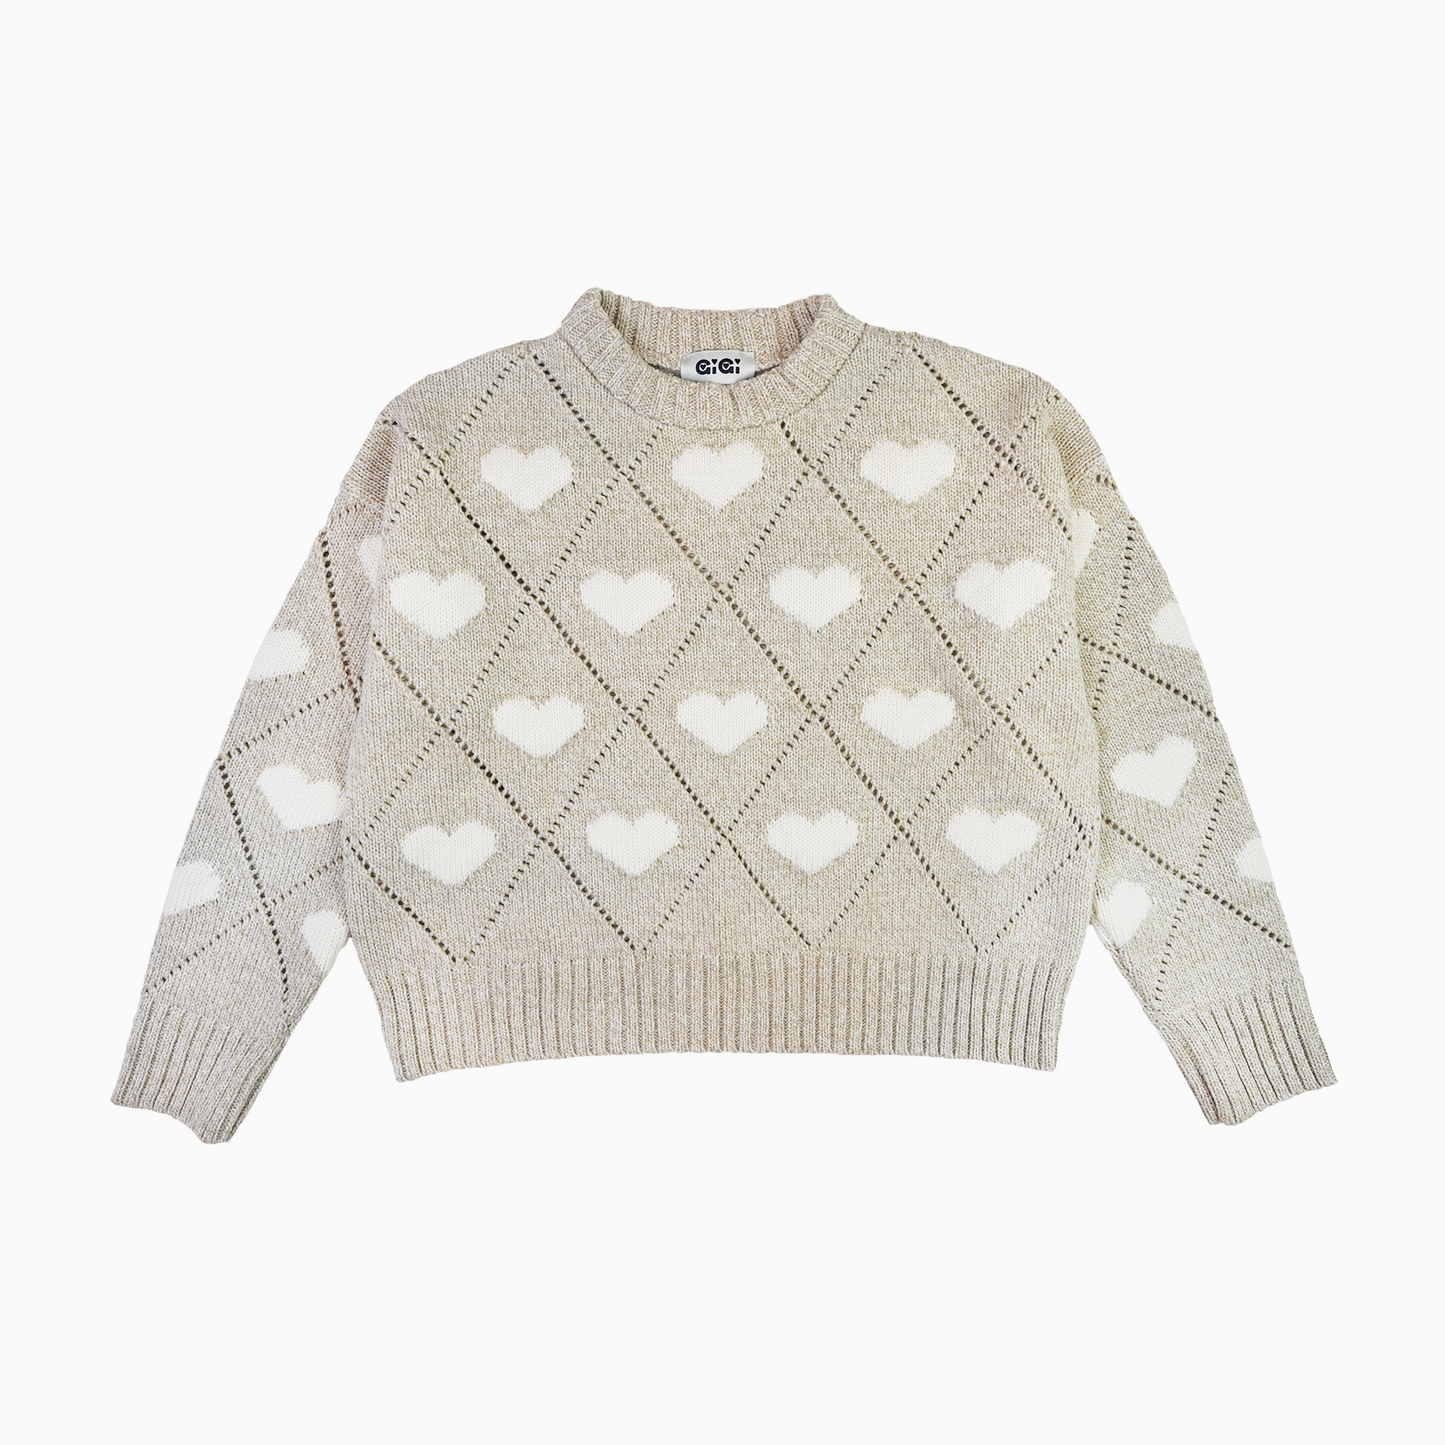 Love Sweater in Beige Marl